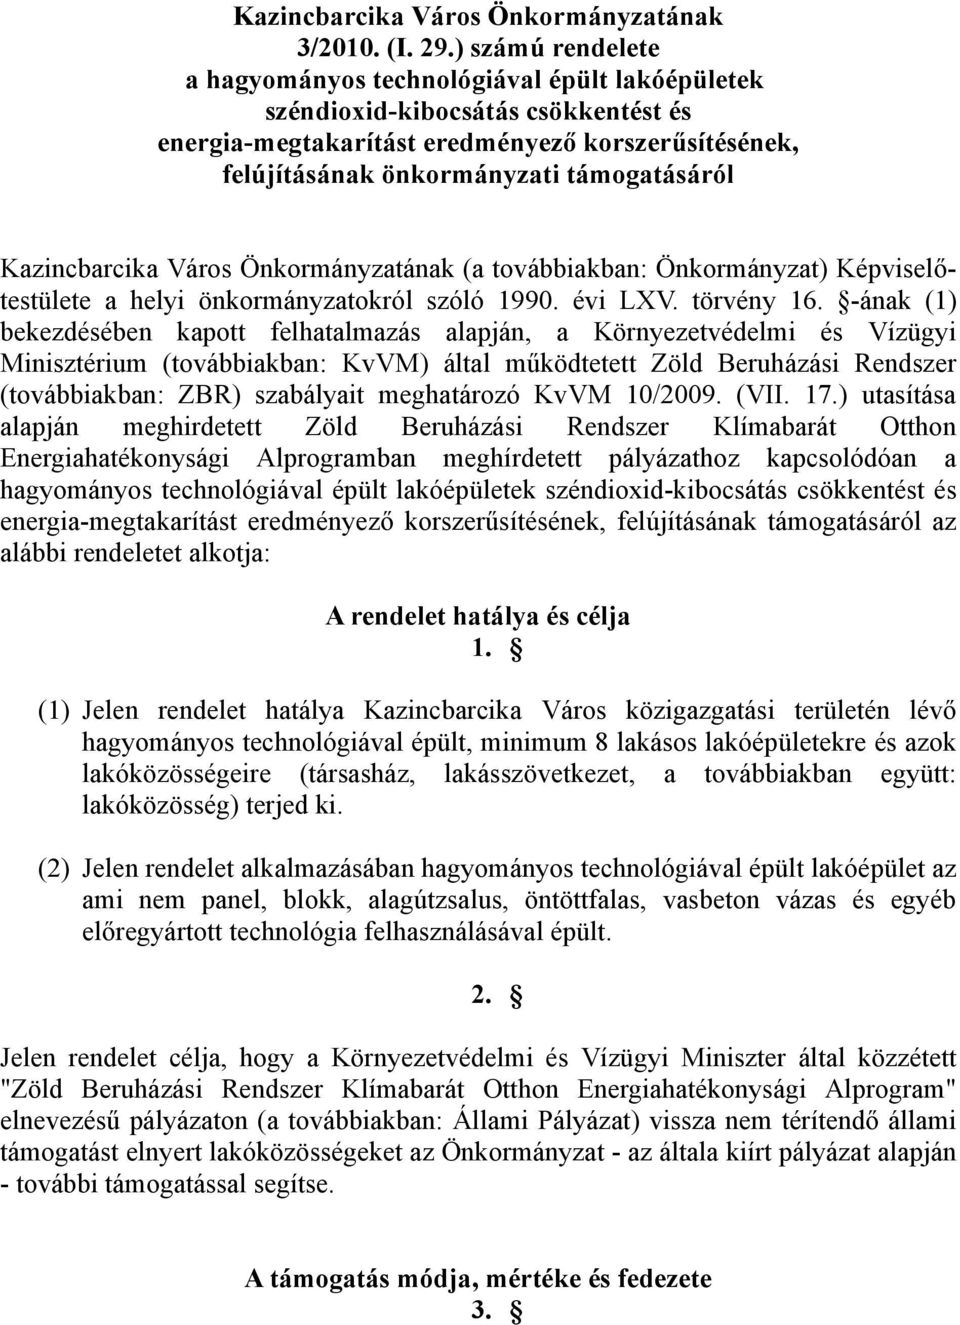 Kazincbarcika Város Önkormányzatának (a továbbiakban: Önkormányzat) Képviselőtestülete a helyi önkormányzatokról szóló 1990. évi LXV. törvény 16.